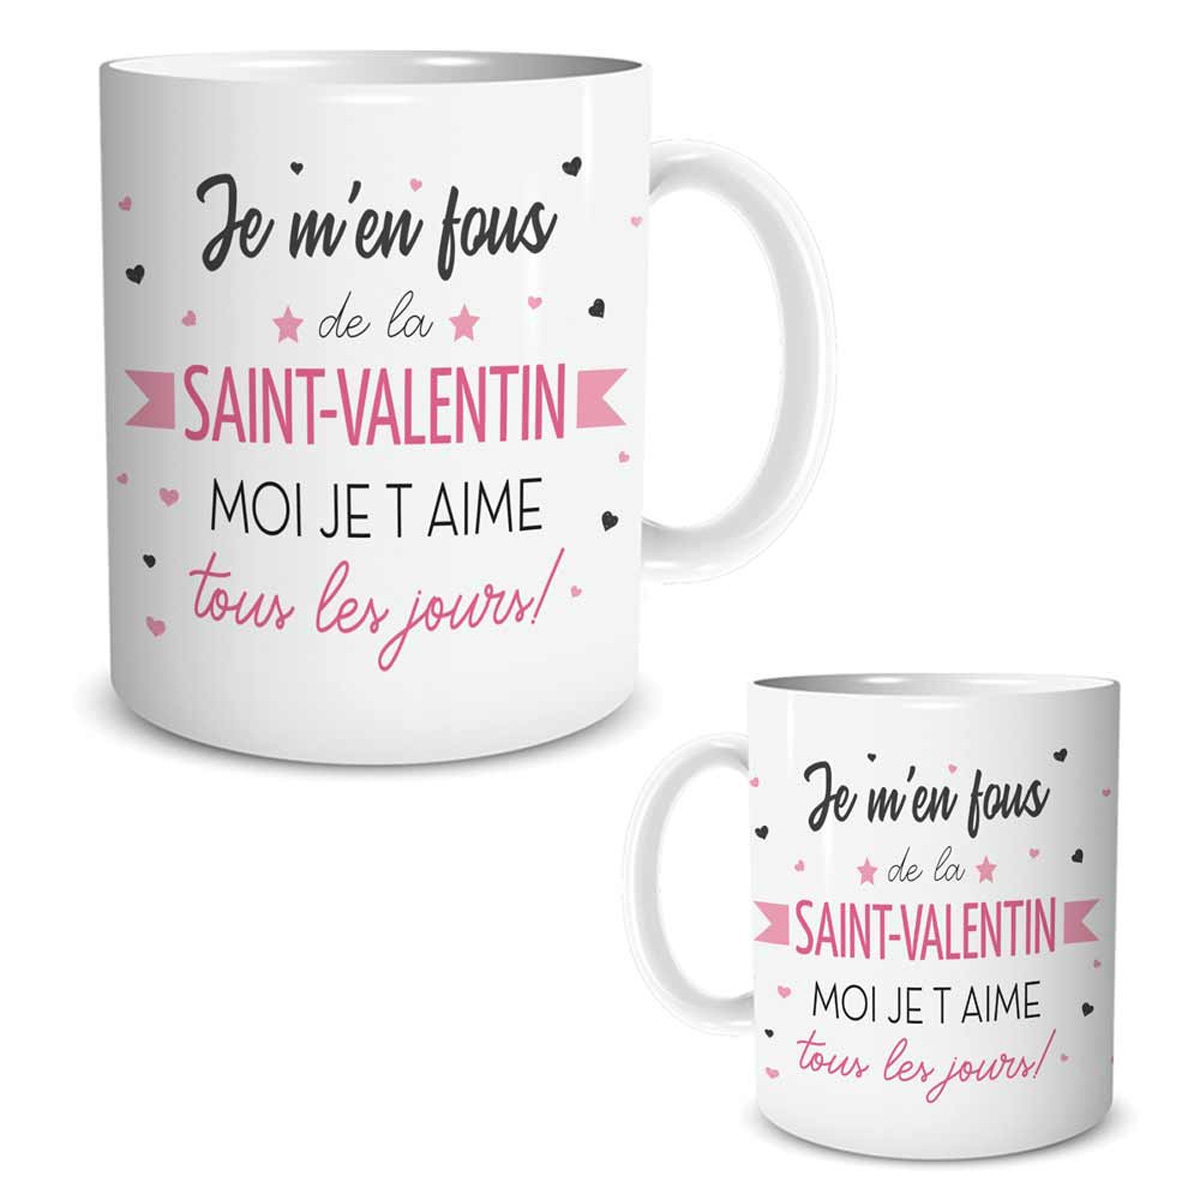 Mug céramique \'Mots d\'Amour\' blanc noir rose (Je m\'en fous de la Saint-Valentin, moi je t\'aime tous les jours !) - 95x8 cm - [R0332]